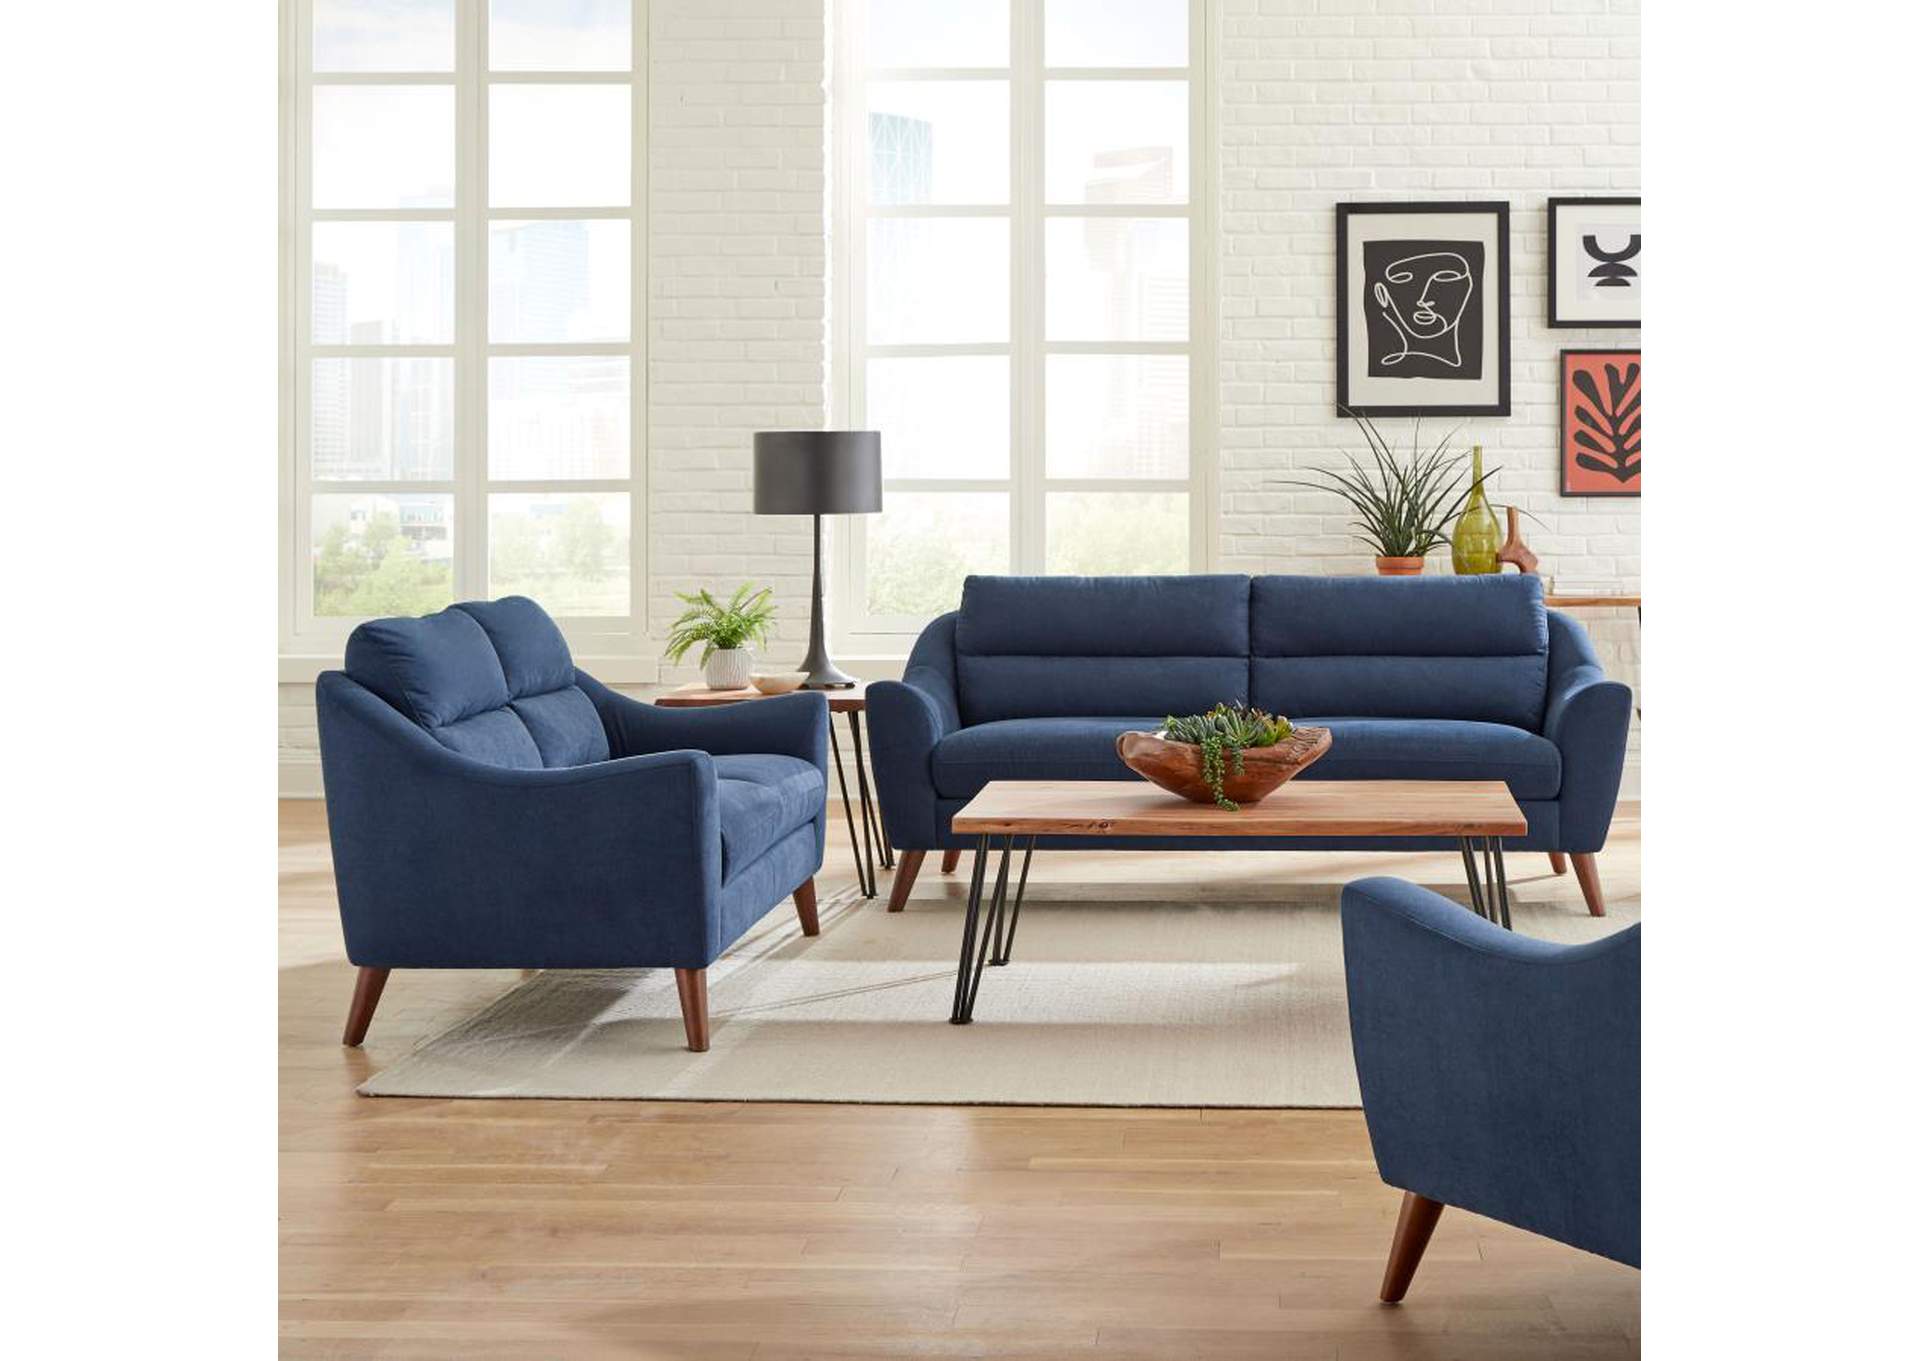 Gano 2 - piece Sloped Arm Living Room Set Navy Blue,Coaster Furniture